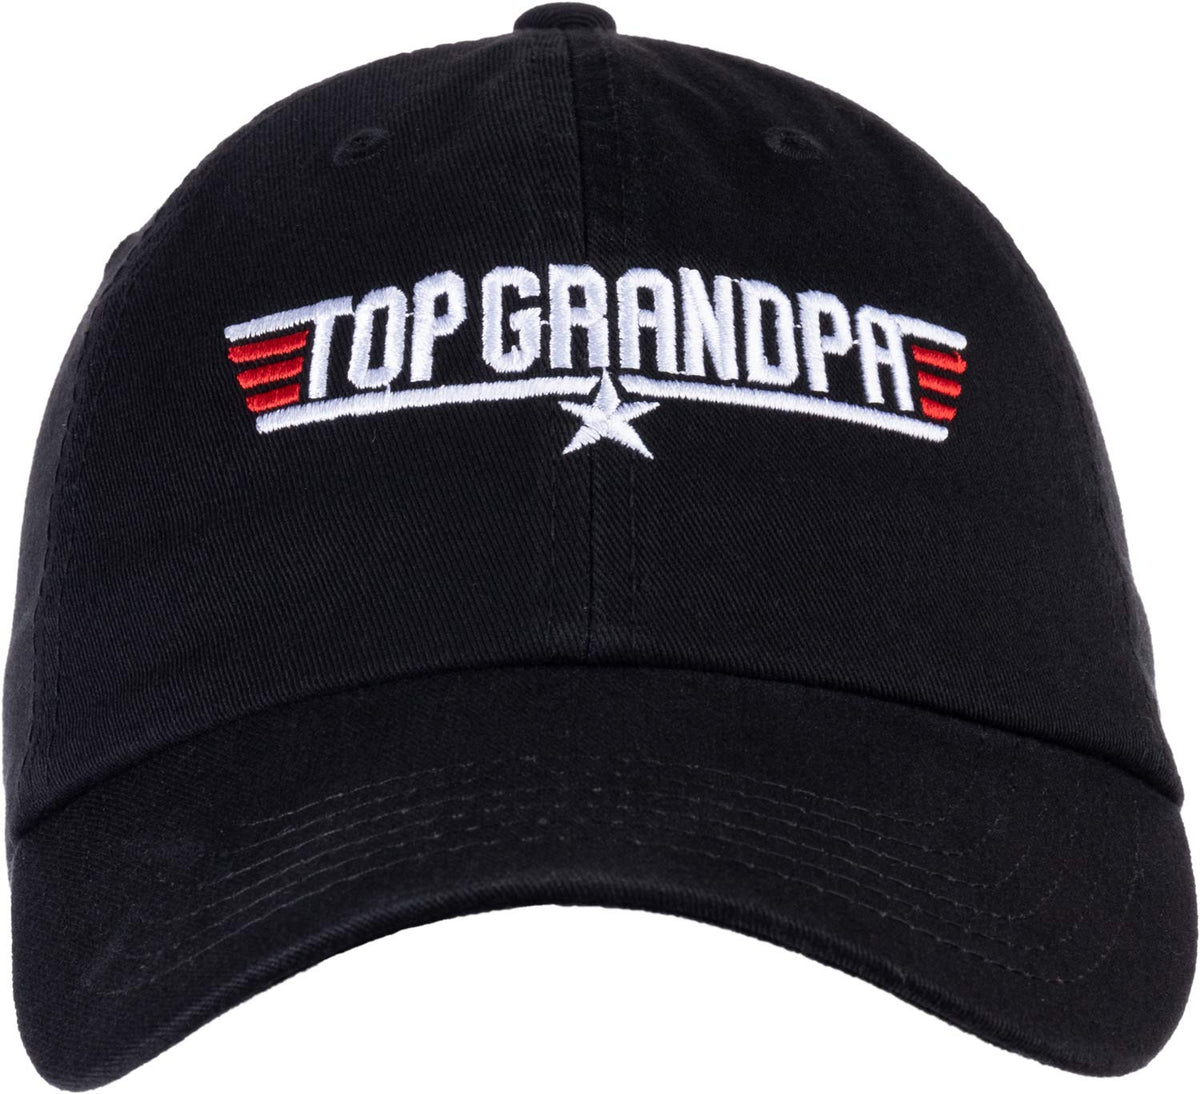 Top Grandpa | Funny 80s Grandpa Air Force Military Baseball Cap Hat Black - Men's/Unisex